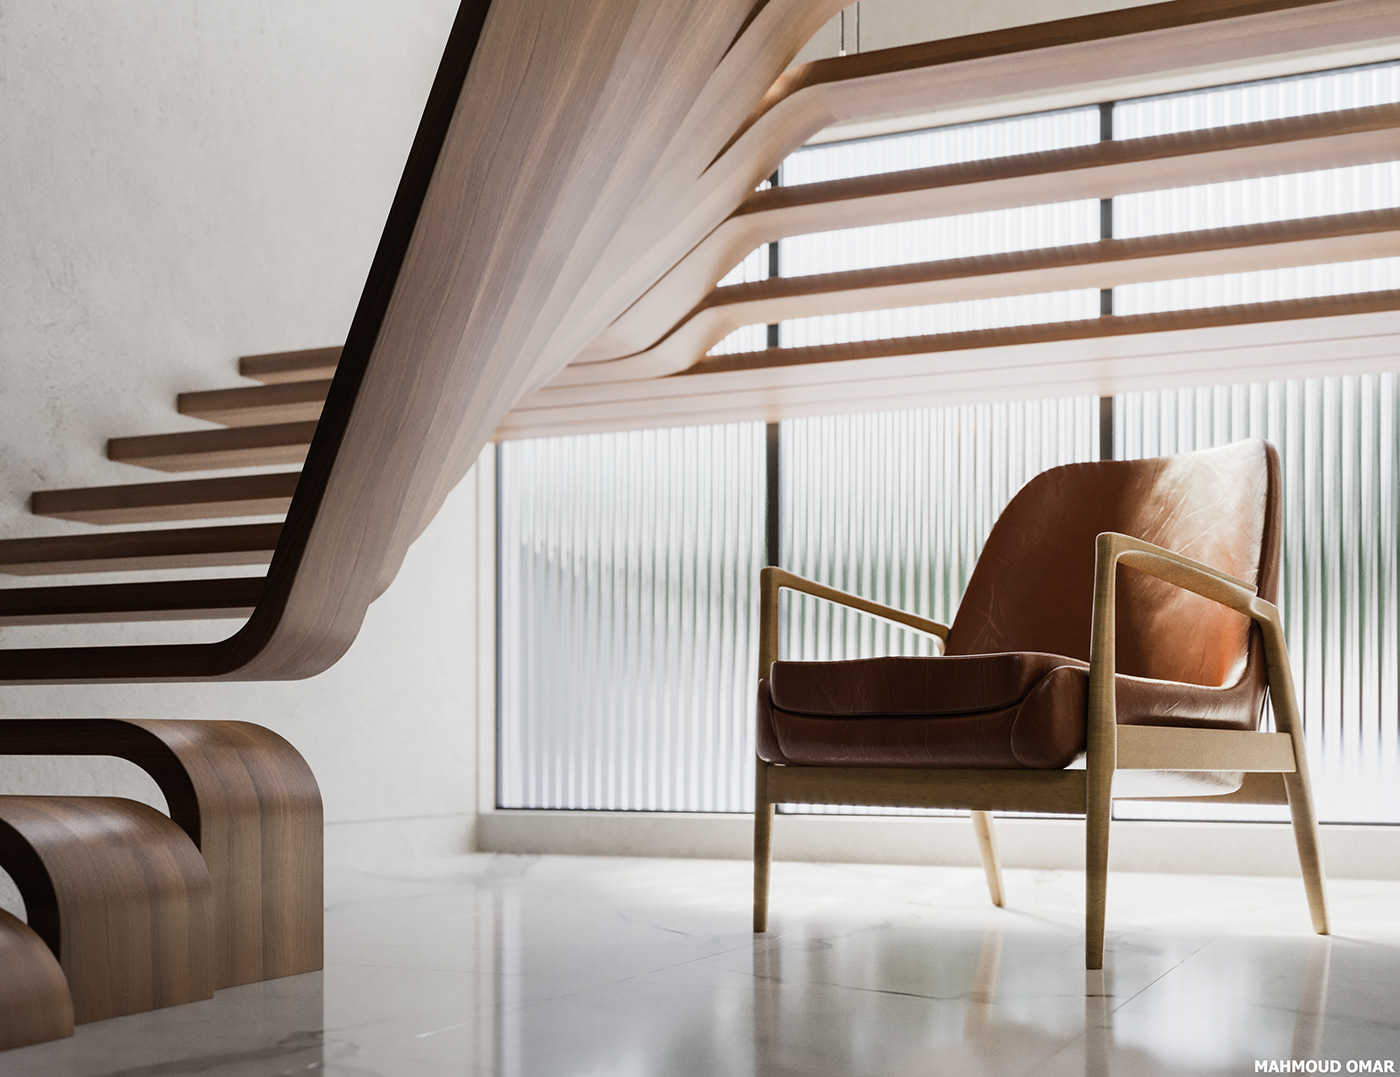 architecture archviz CGI corona Interior interior design  modern Render stairs visualization